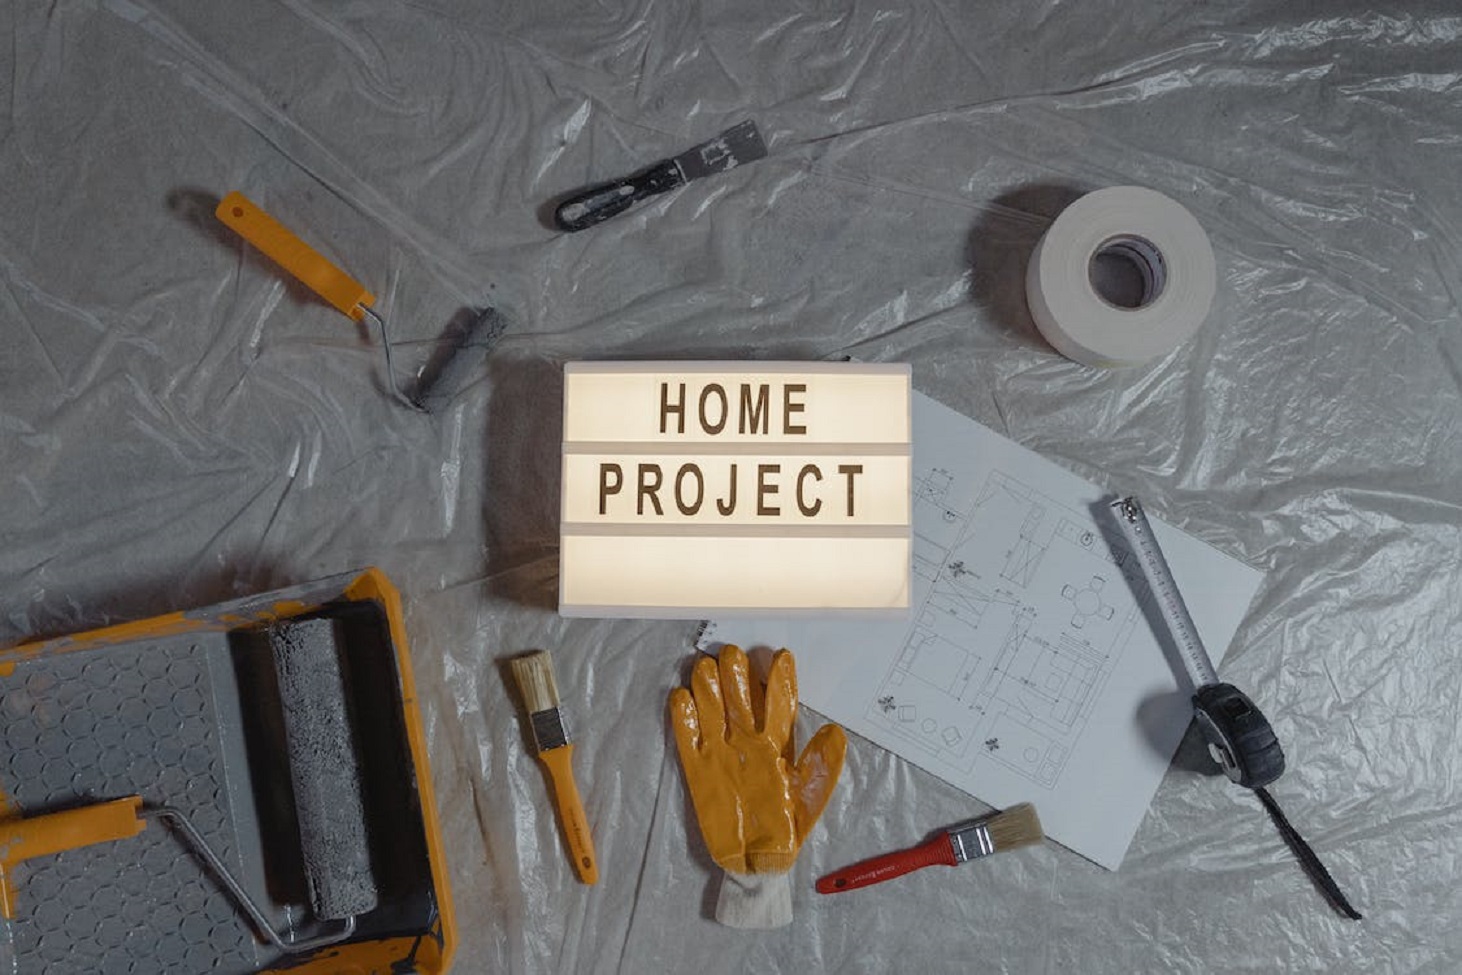 كيفية اختيار مشروع مربح من المنزل يتناسب مع مهاراتك